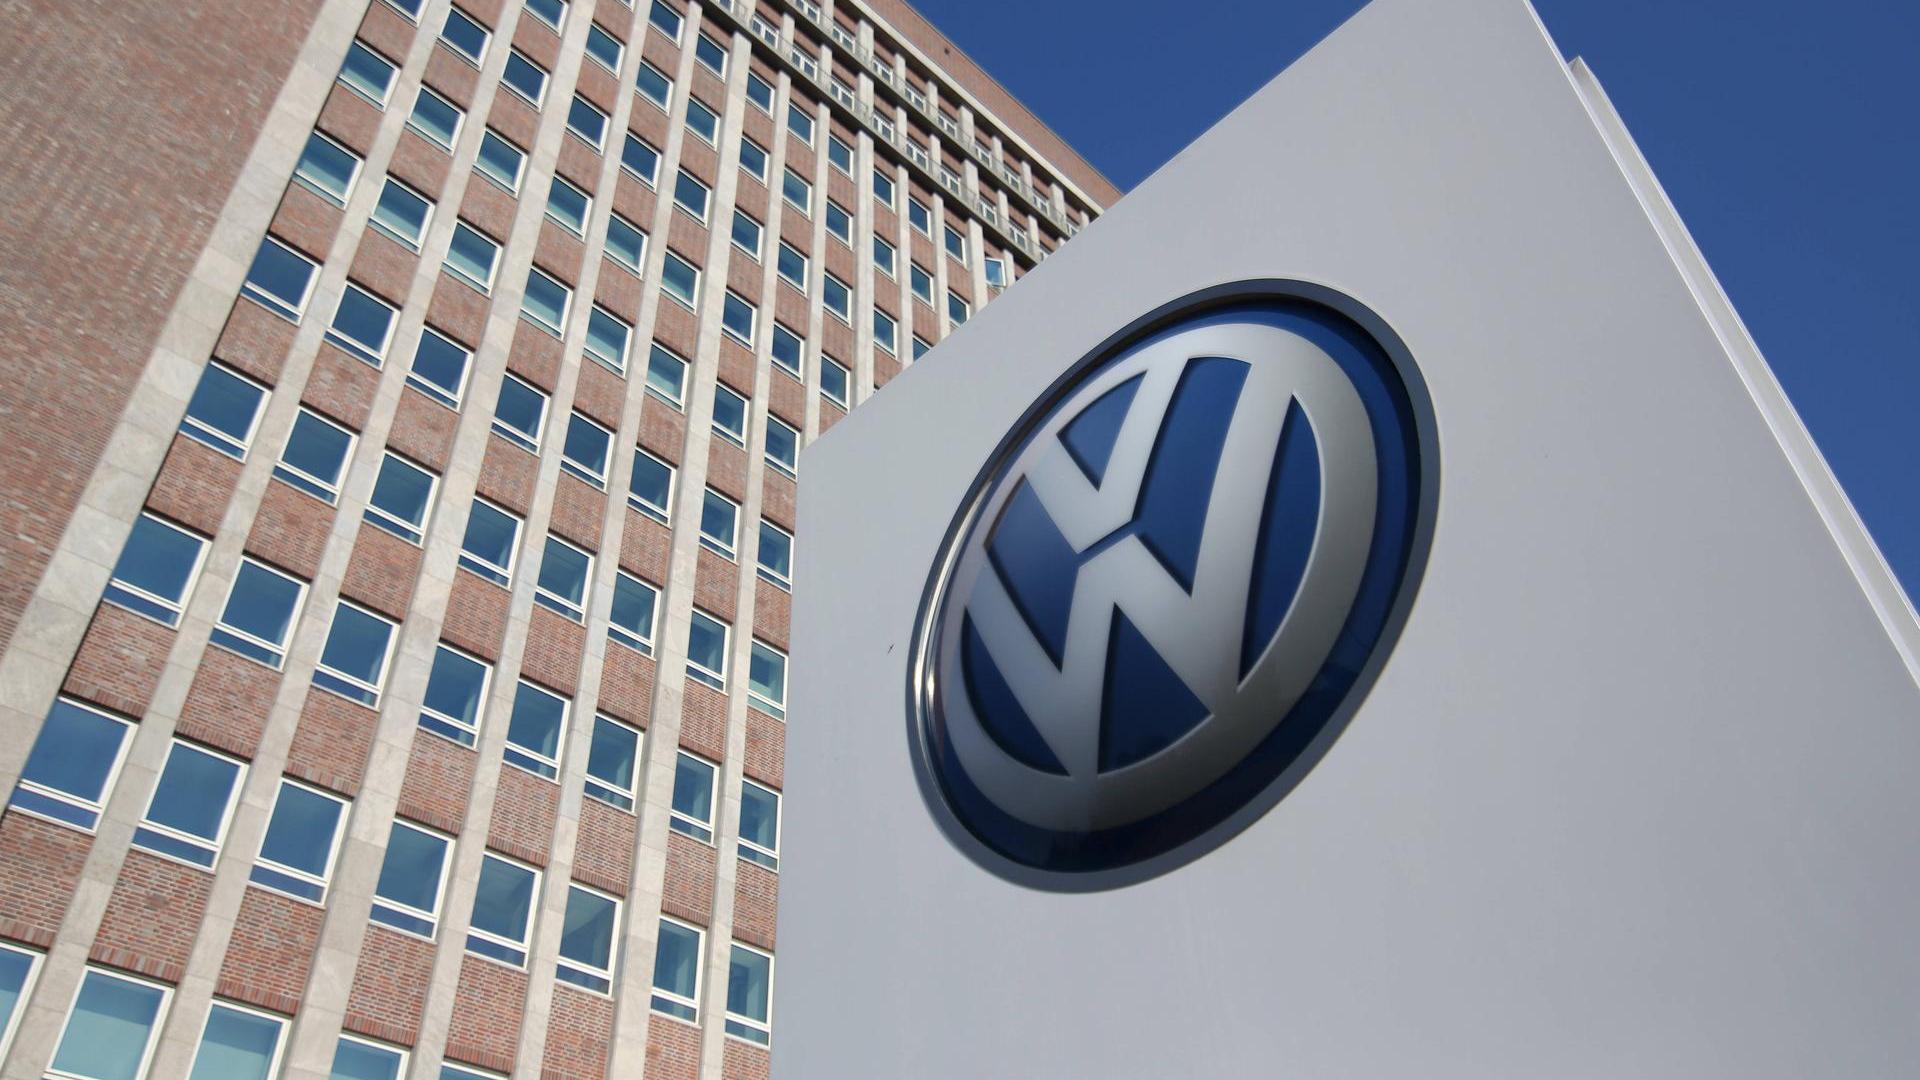 Broadcom, Volkswagen'e 1 milyar dolarlık patent ihlali davası açtı